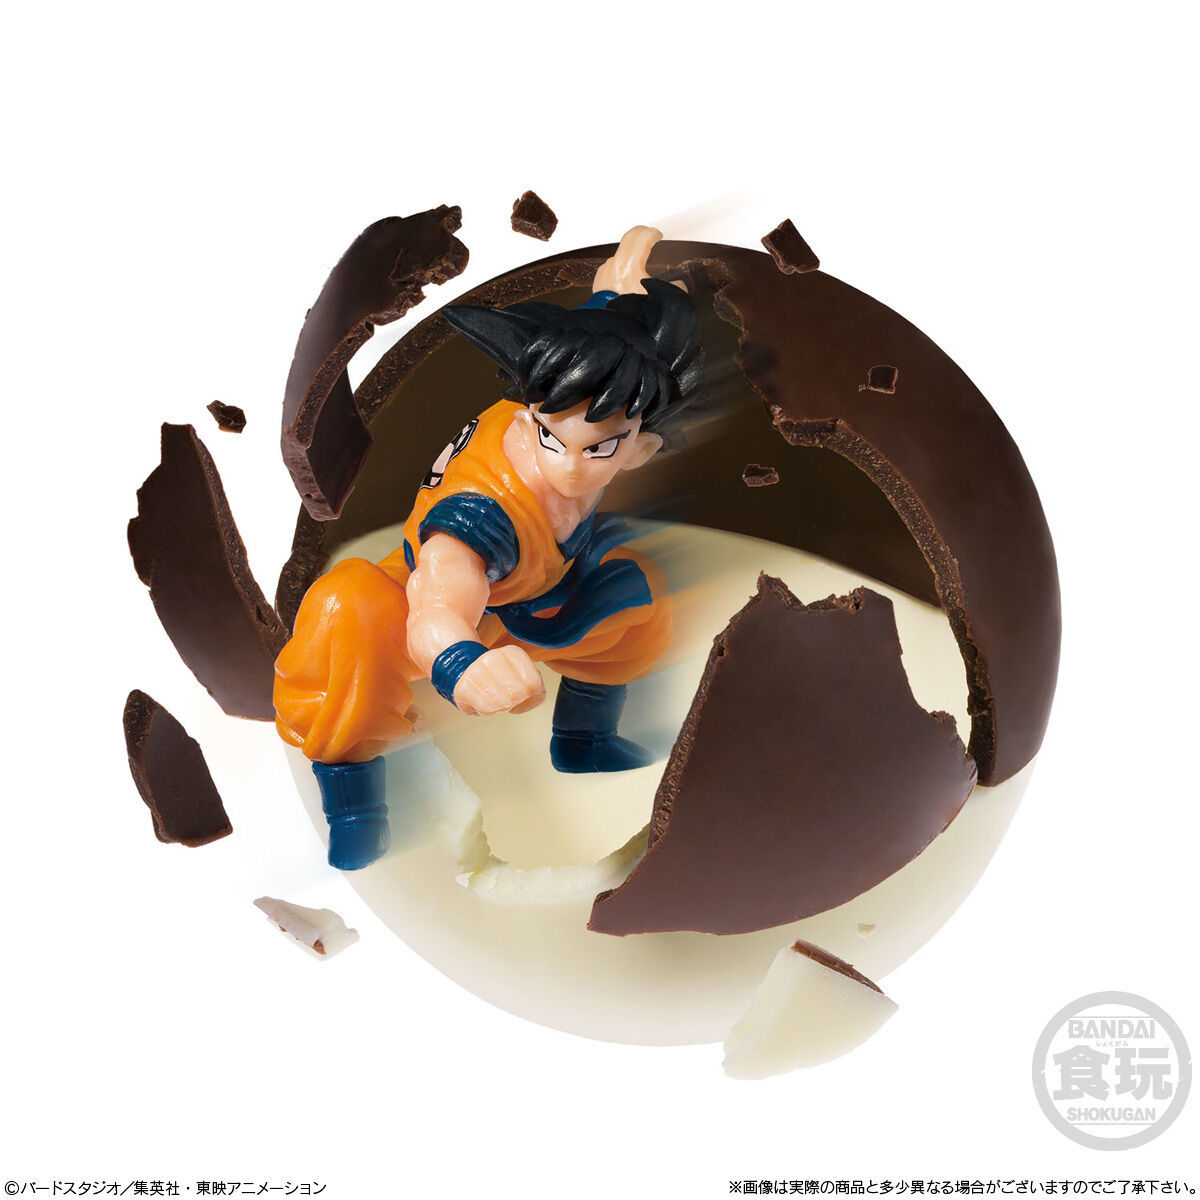 萬代食玩新系列『CHOCO SAP 七龍珠』巧克力轉蛋！收錄 16 款小尺寸角色模型